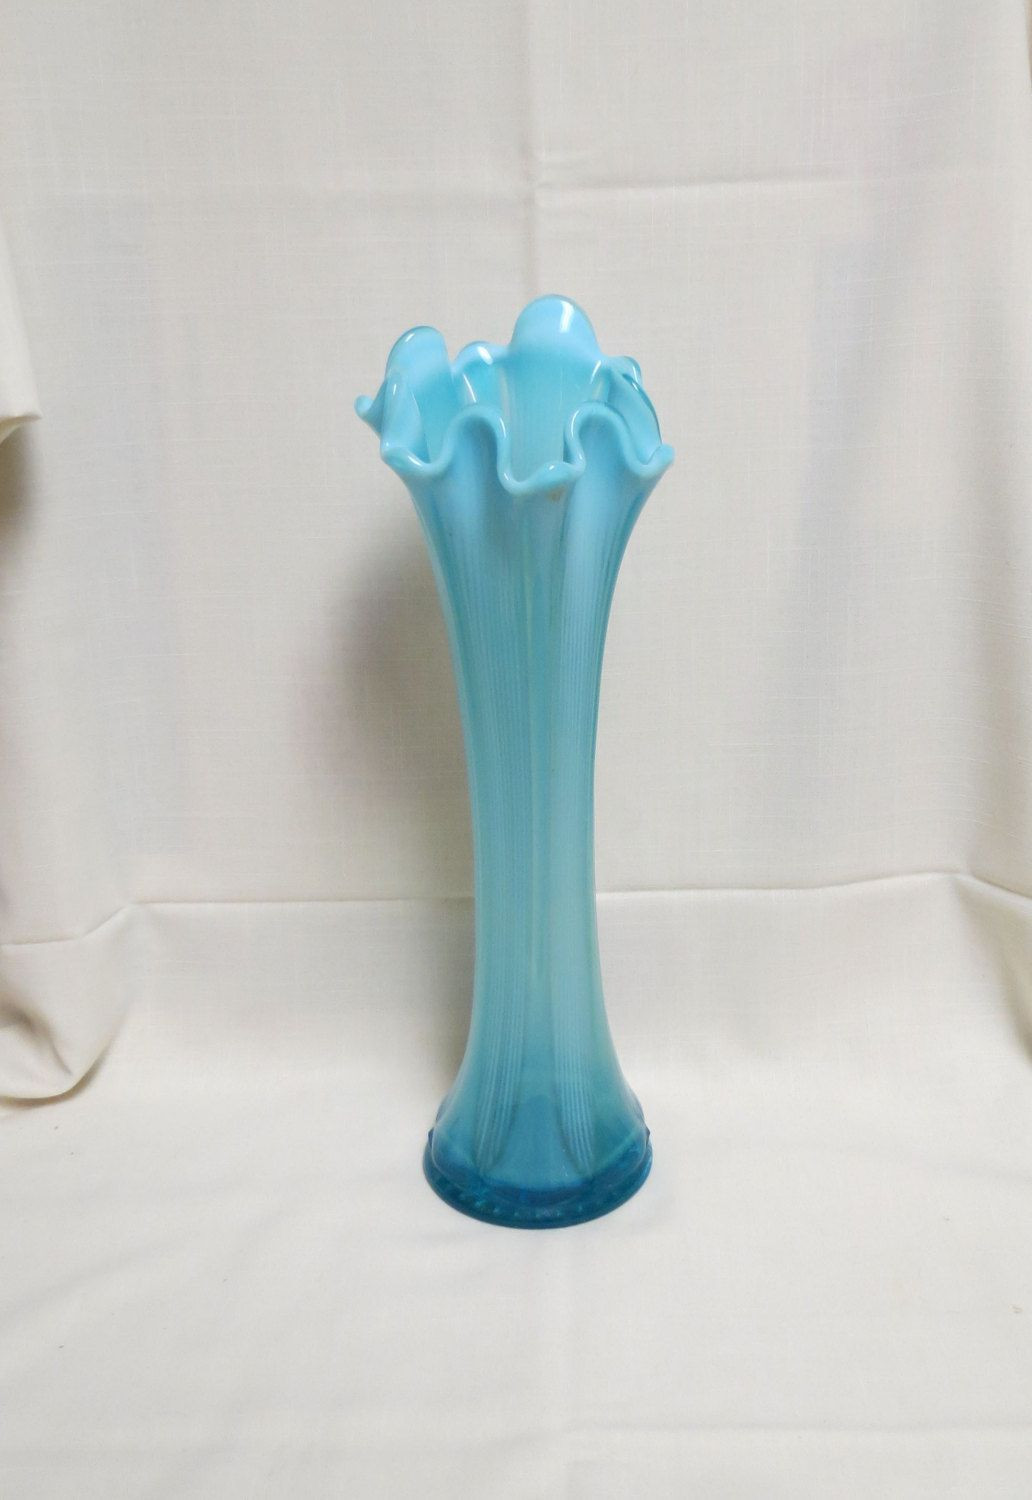 16 Ideal Blue Swirl Glass Vase 2023 free download blue swirl glass vase of vintage blue opalescent glass tall vase ruffled edge elegant glass within vintage blue opalescent glass tall vase ruffled edge elegant glass by kansaskardsstudio on 